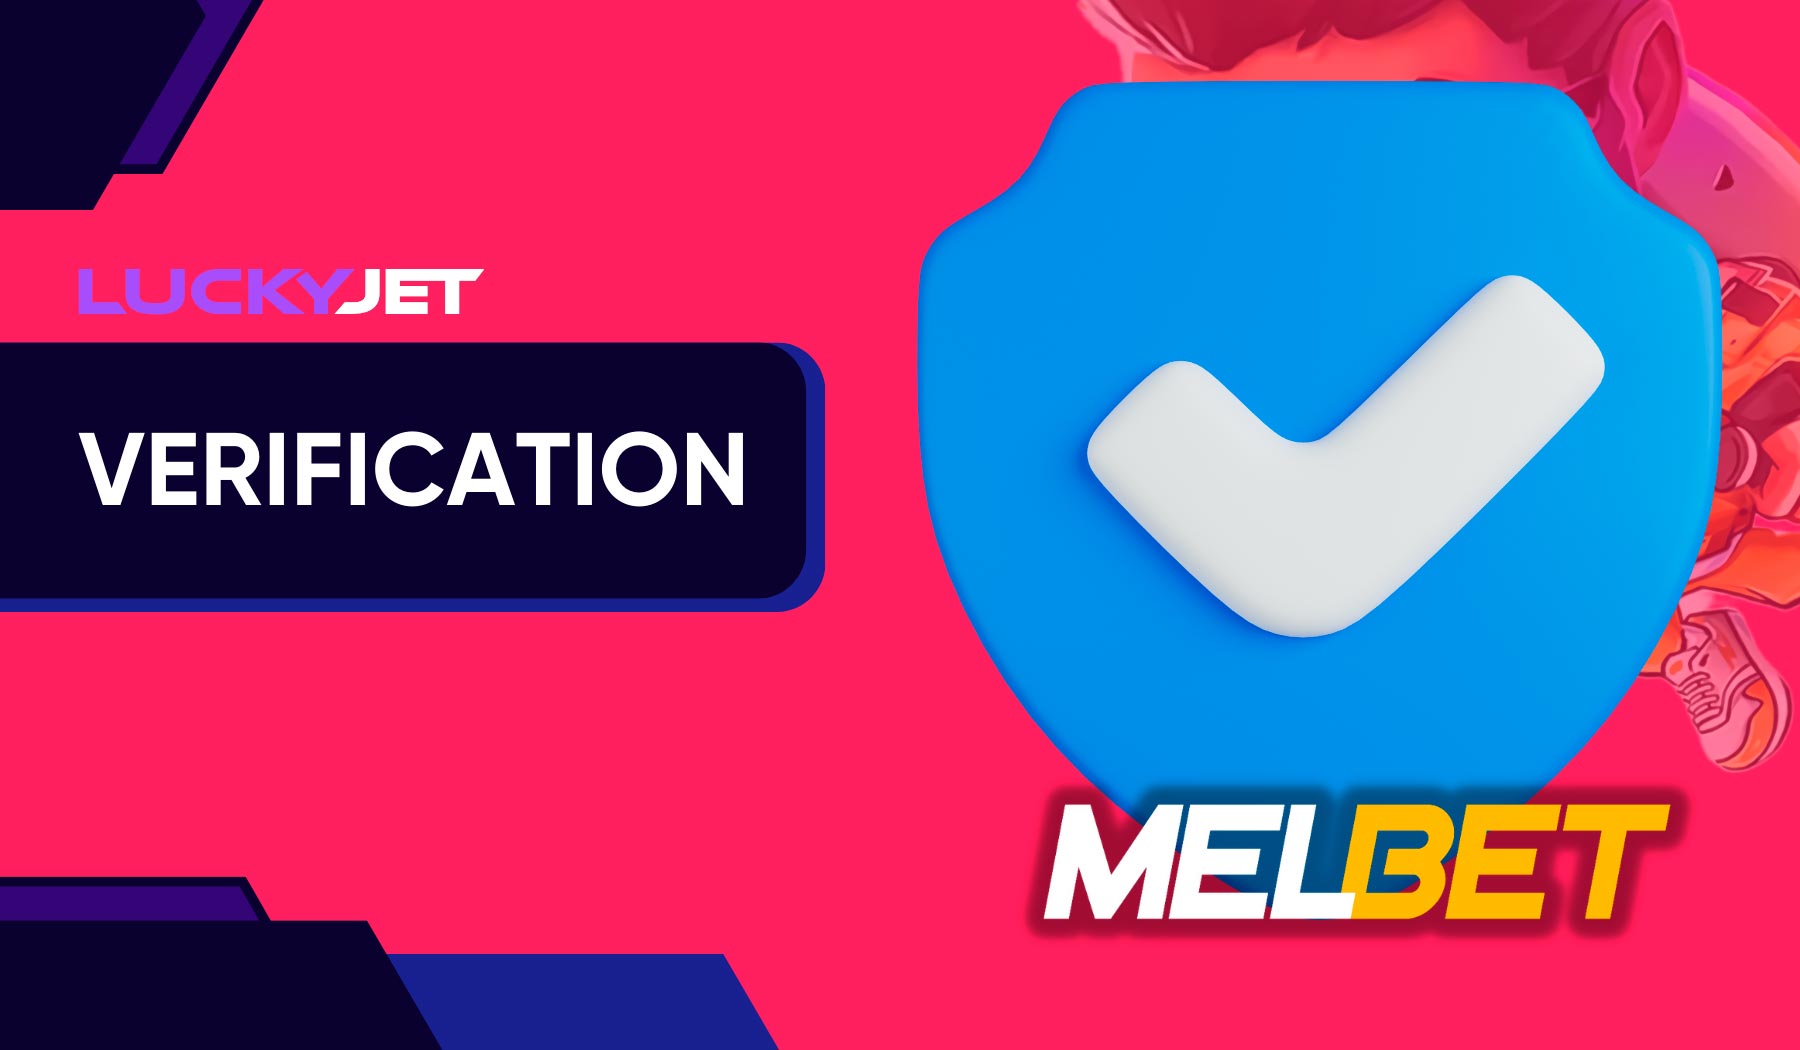 Let's talk about the Melbet account verification procedure